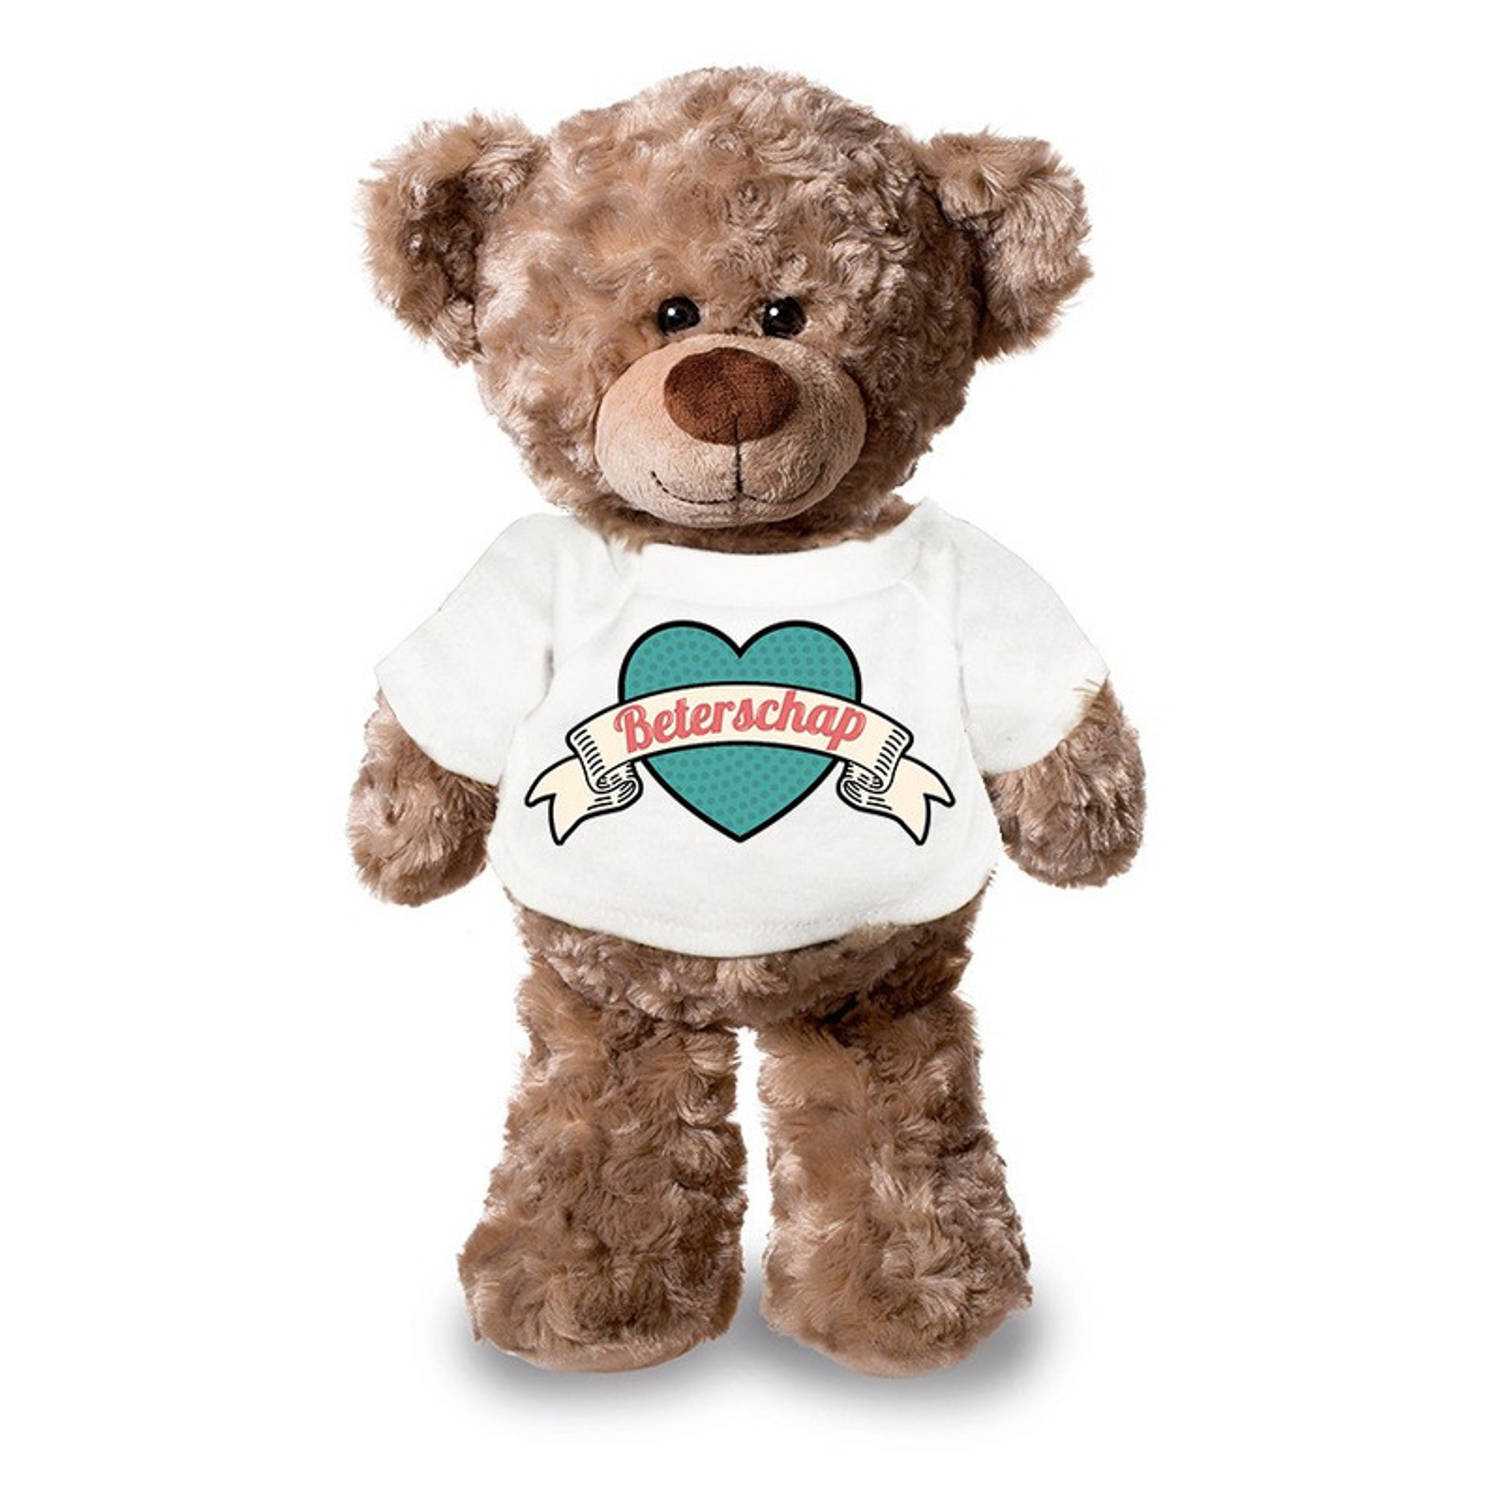 Beterschap pluche teddybeer knuffel 24 cm met wit retro t-shirt beterschap-cadeau knuffelbeer